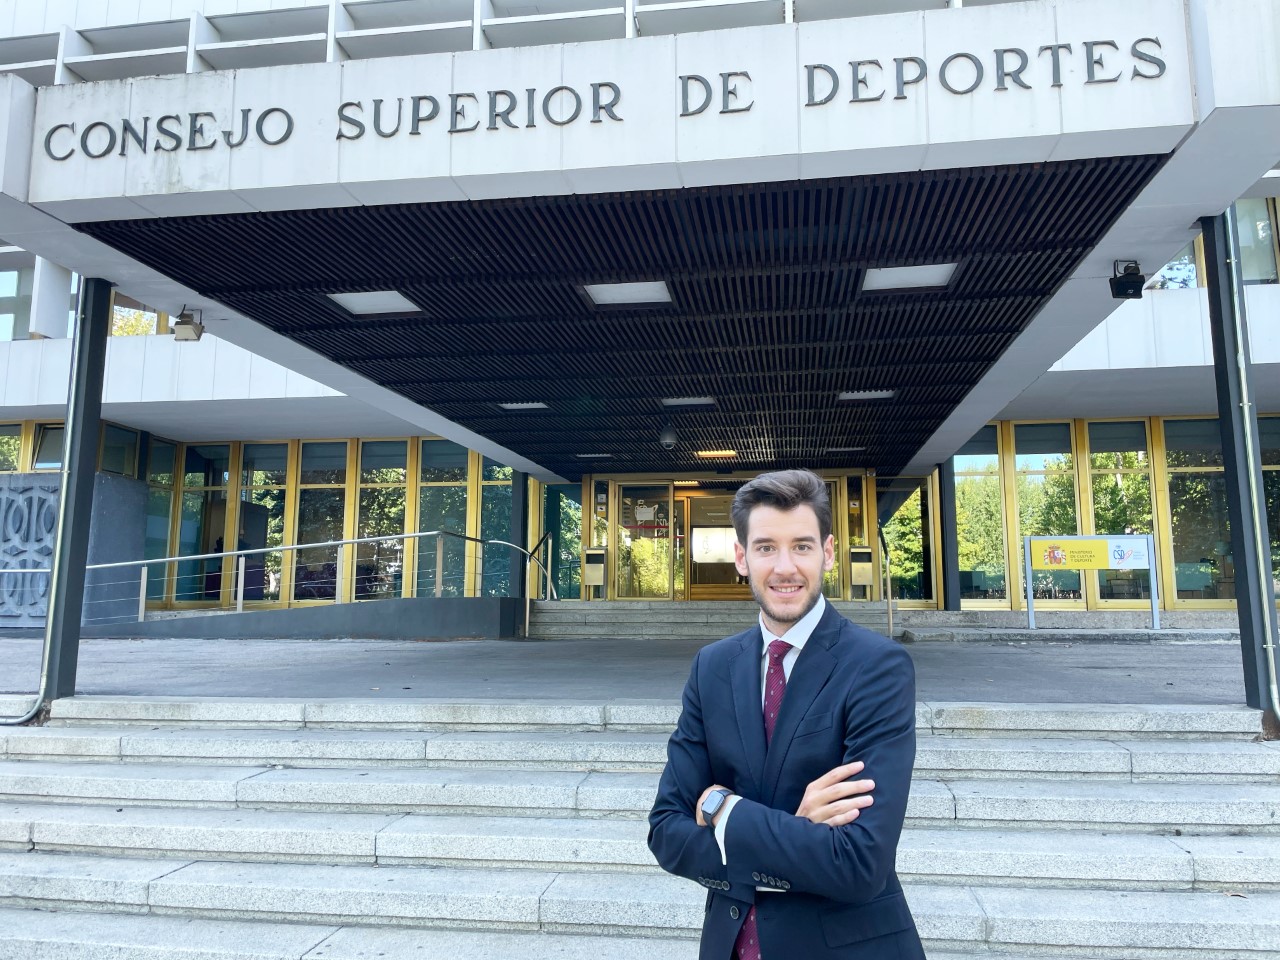 Fernando Molinero és nomenat subdirector de règim jurídic del CSD El Periòdic d'Ontinyent - Noticies a Ontinyent